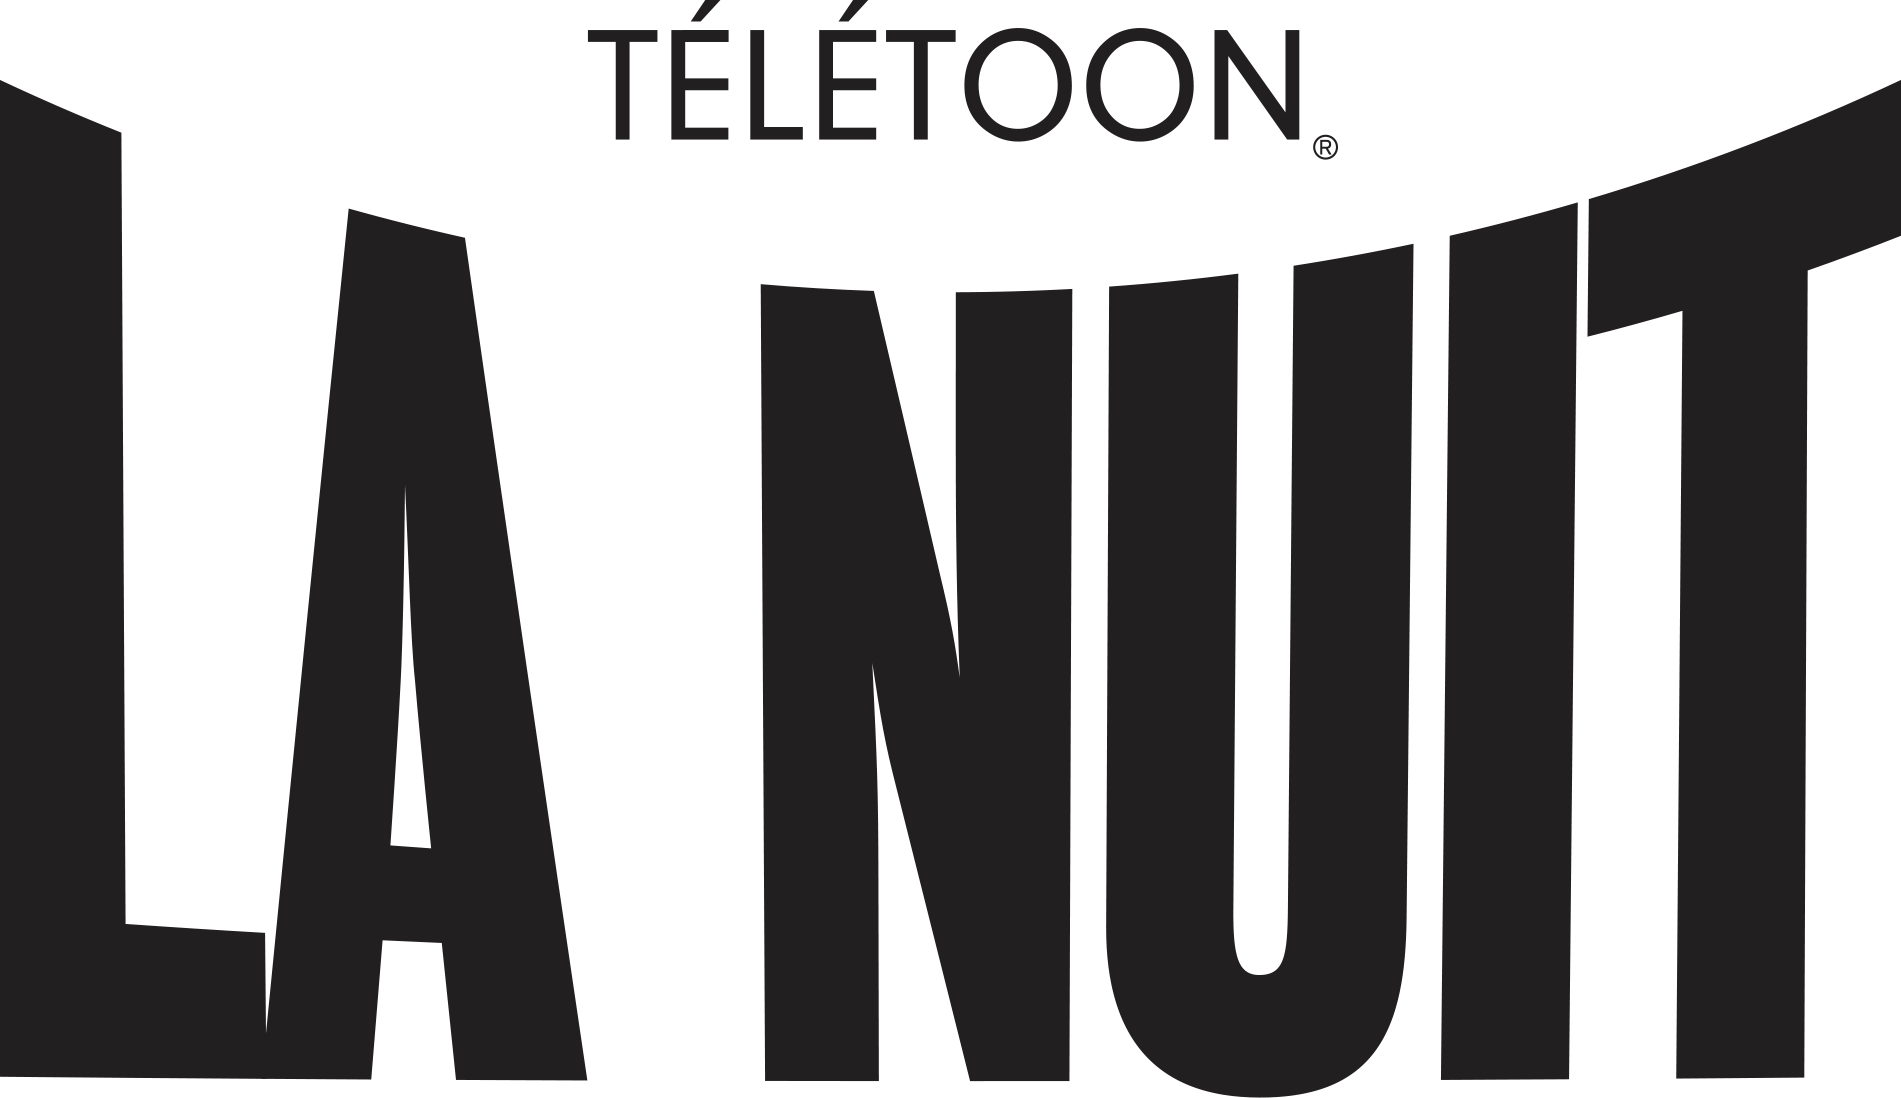 Logo de Télétoon la nuit